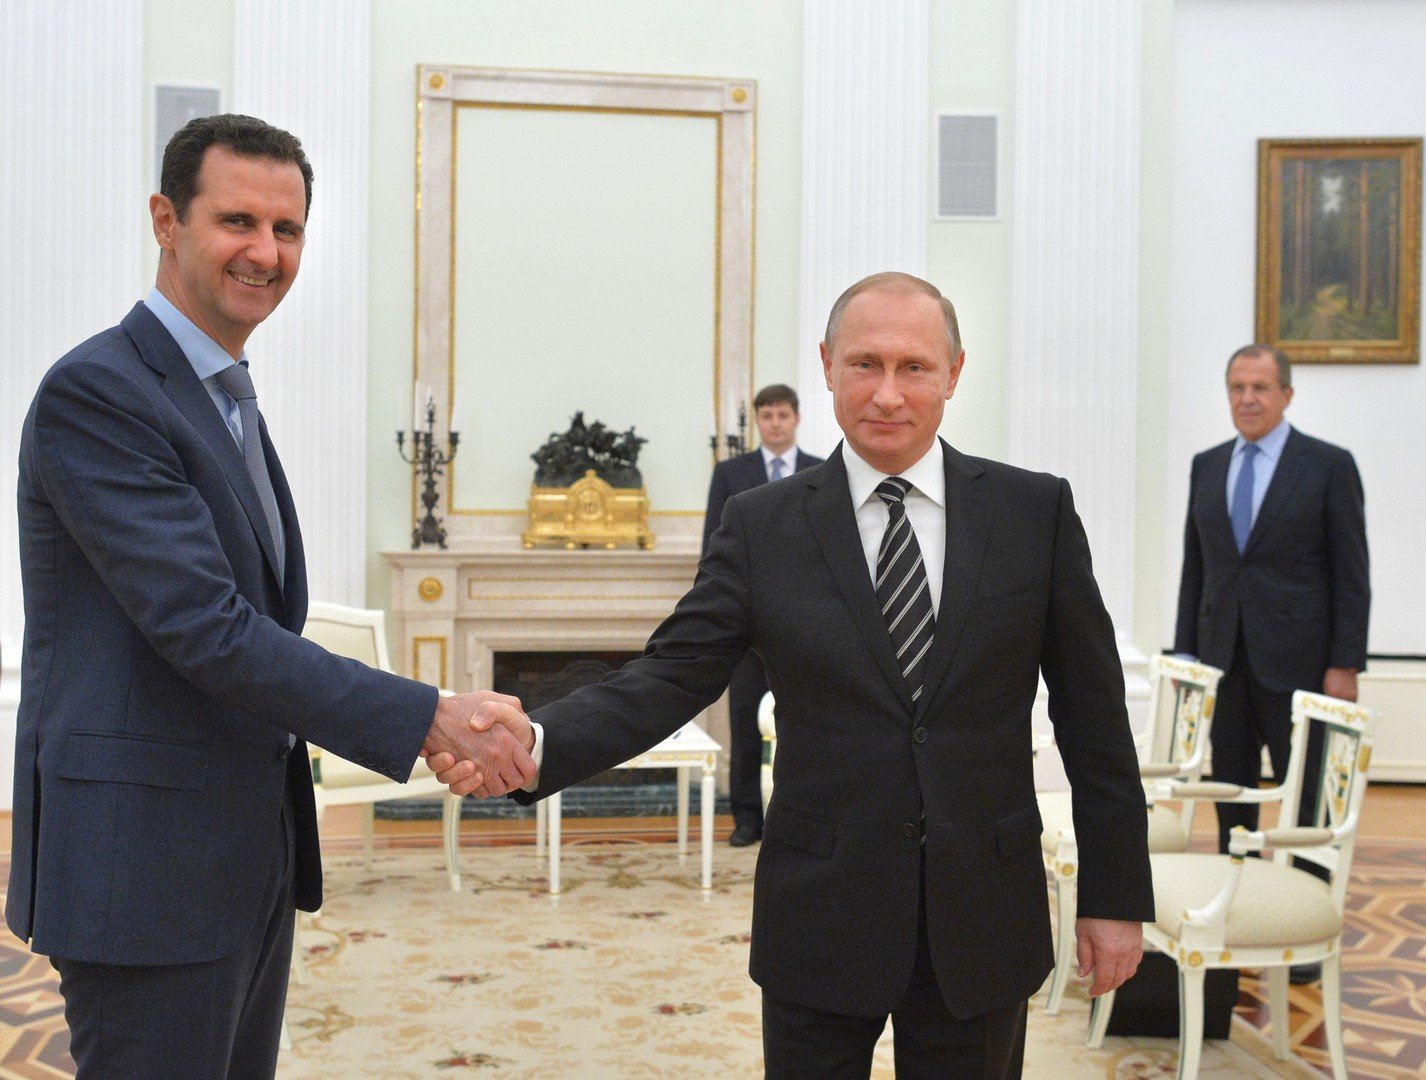 مدفيديف: الأسد يجب أن يبقى في منصبه حتى تحديد مستقبل سوريا السياسي